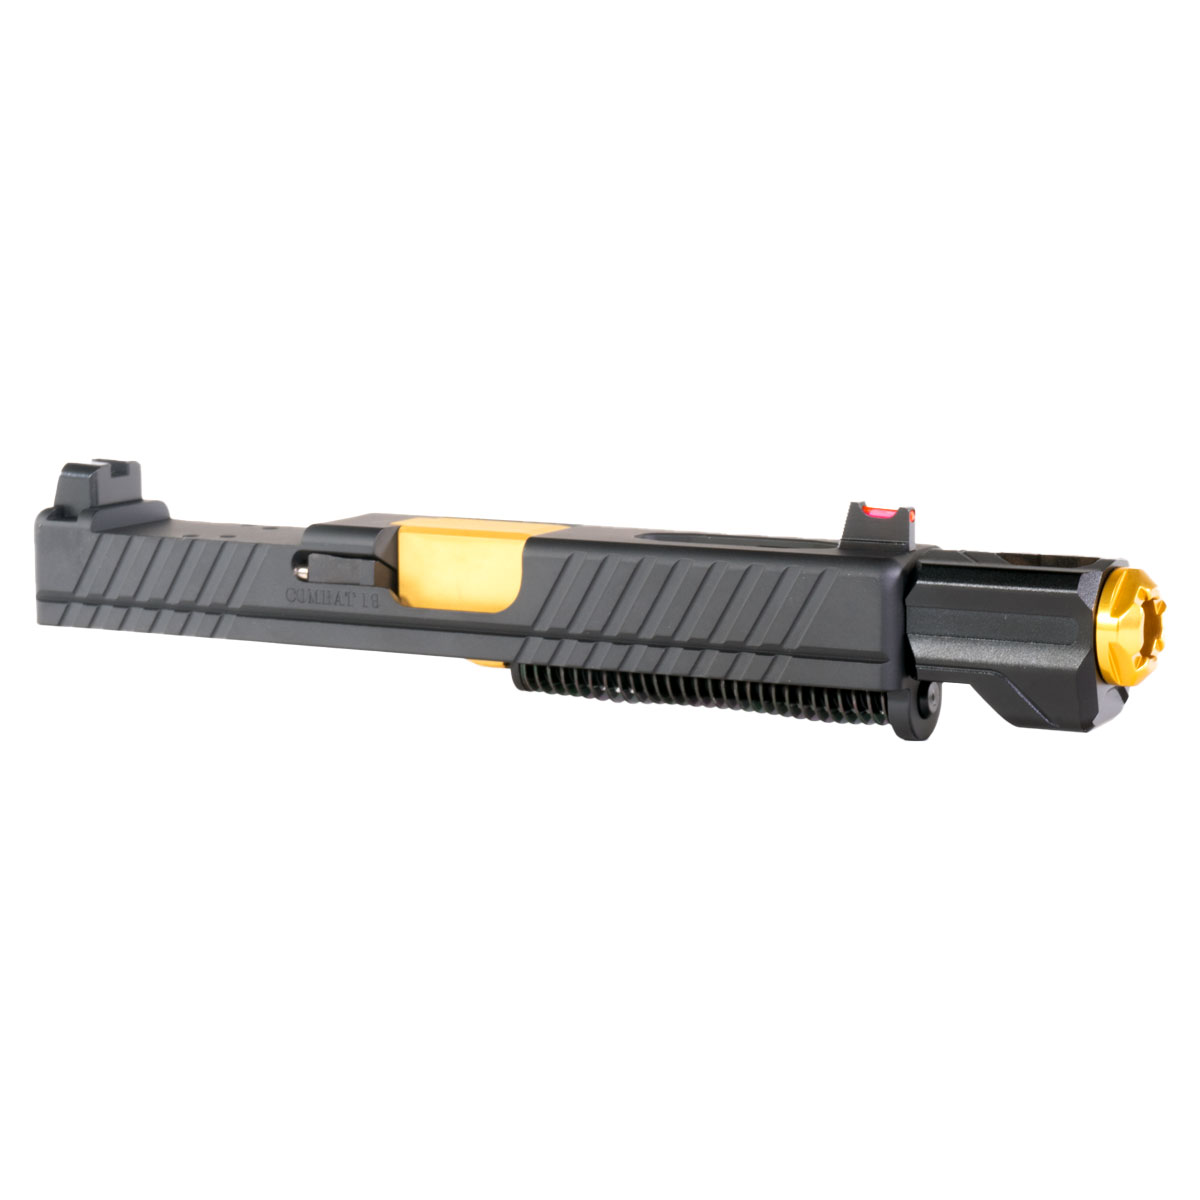 DD 'Bbang w/ Tyrant Designs Compensator' 9mm Complete Slide Kit - Glock 19 Gen 1-3 Compatible